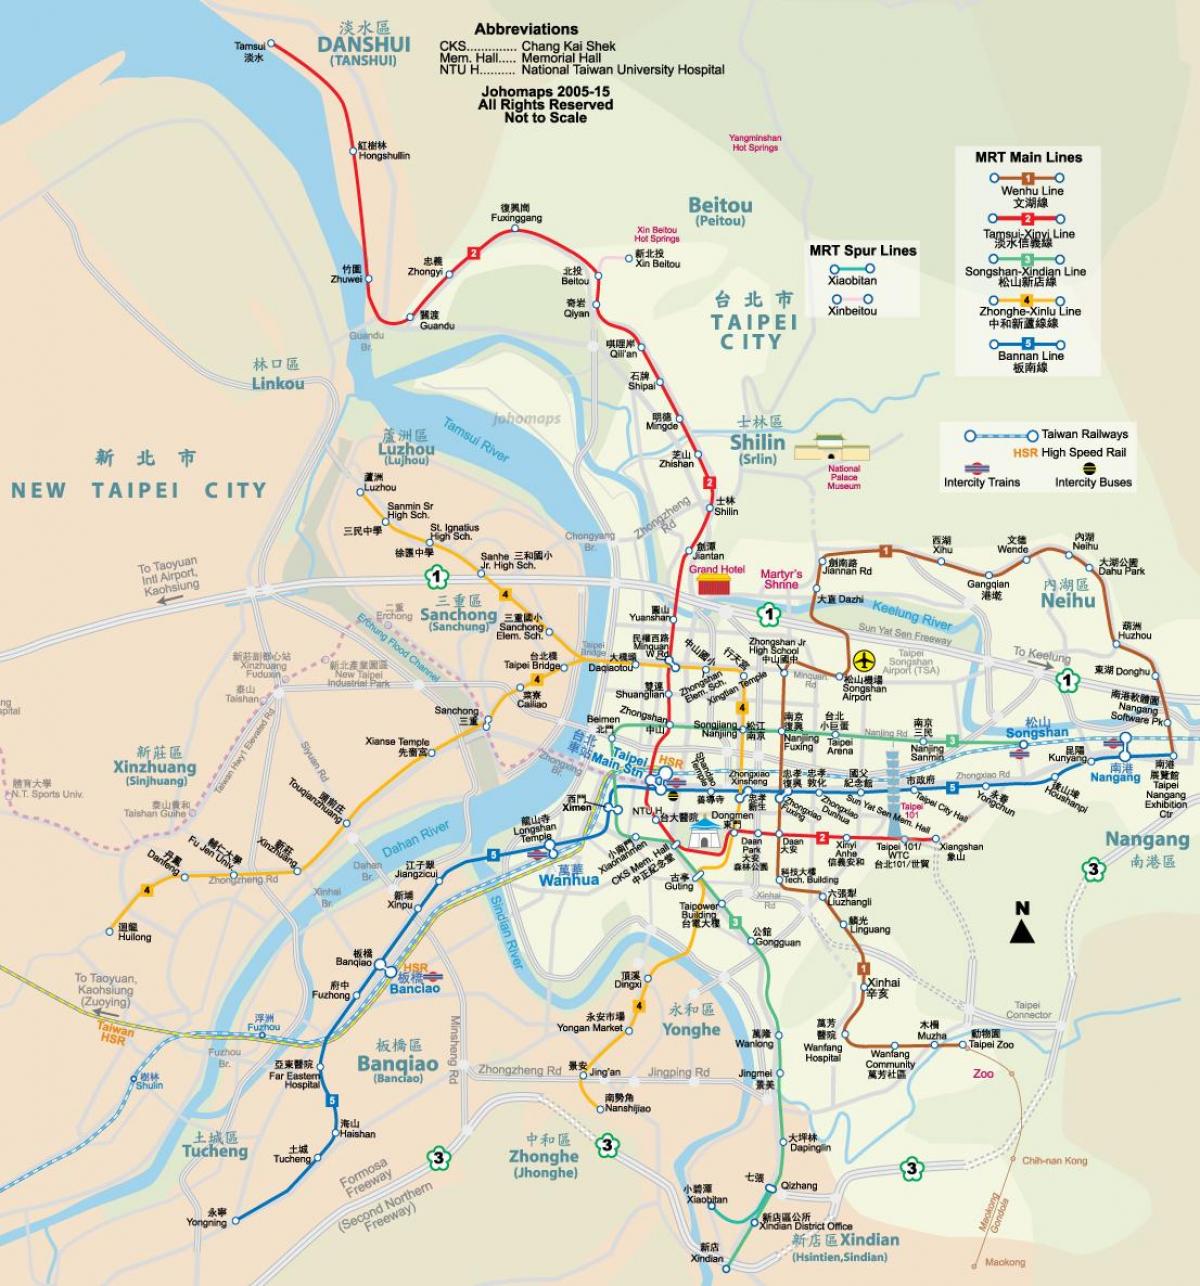 خريطة danshui